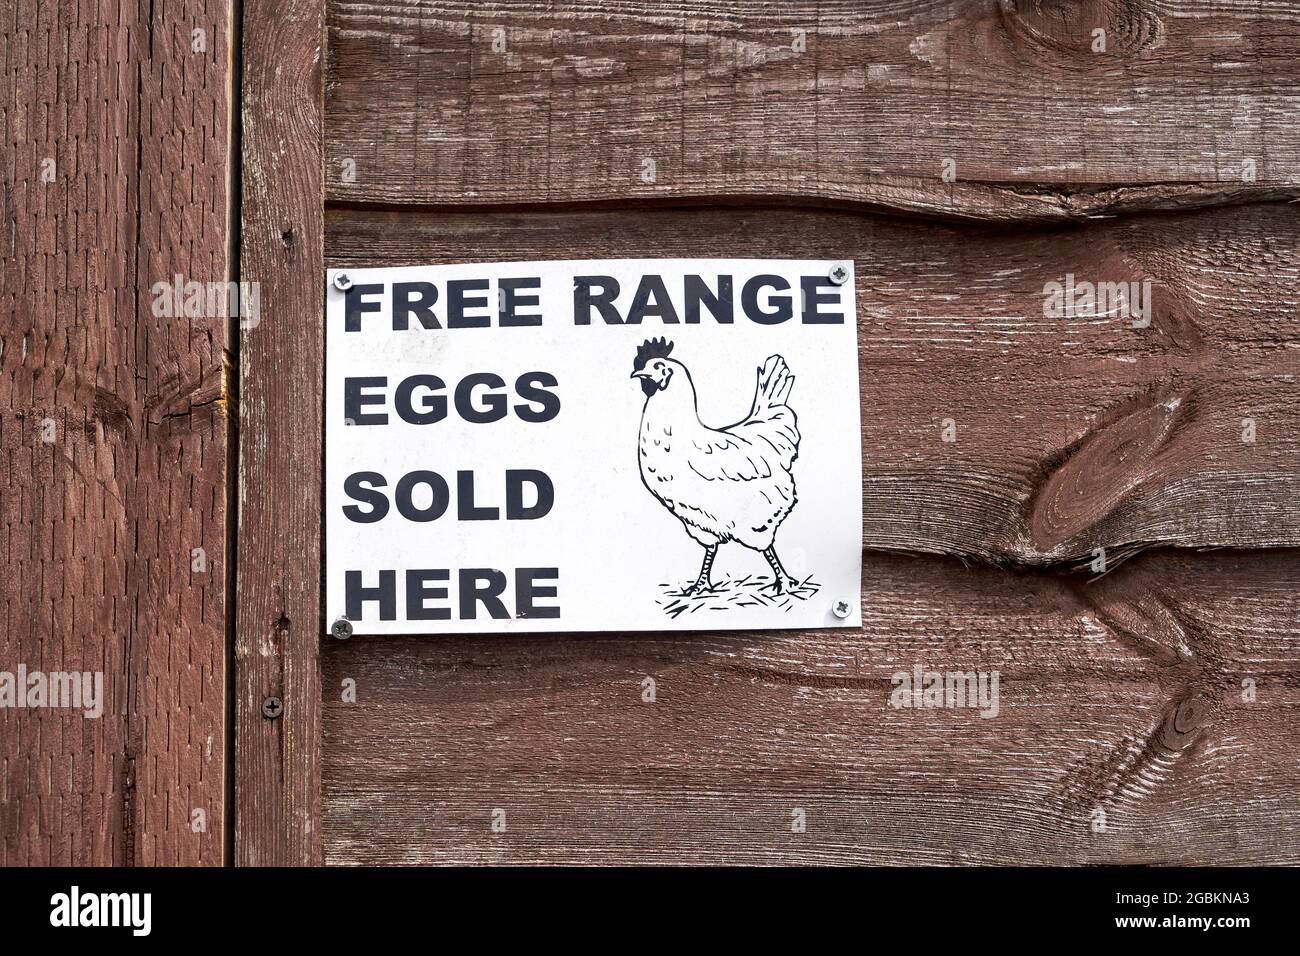 Huevos de la gama libre vendidos aquí signo con una ilustración de un pollo Foto de stock